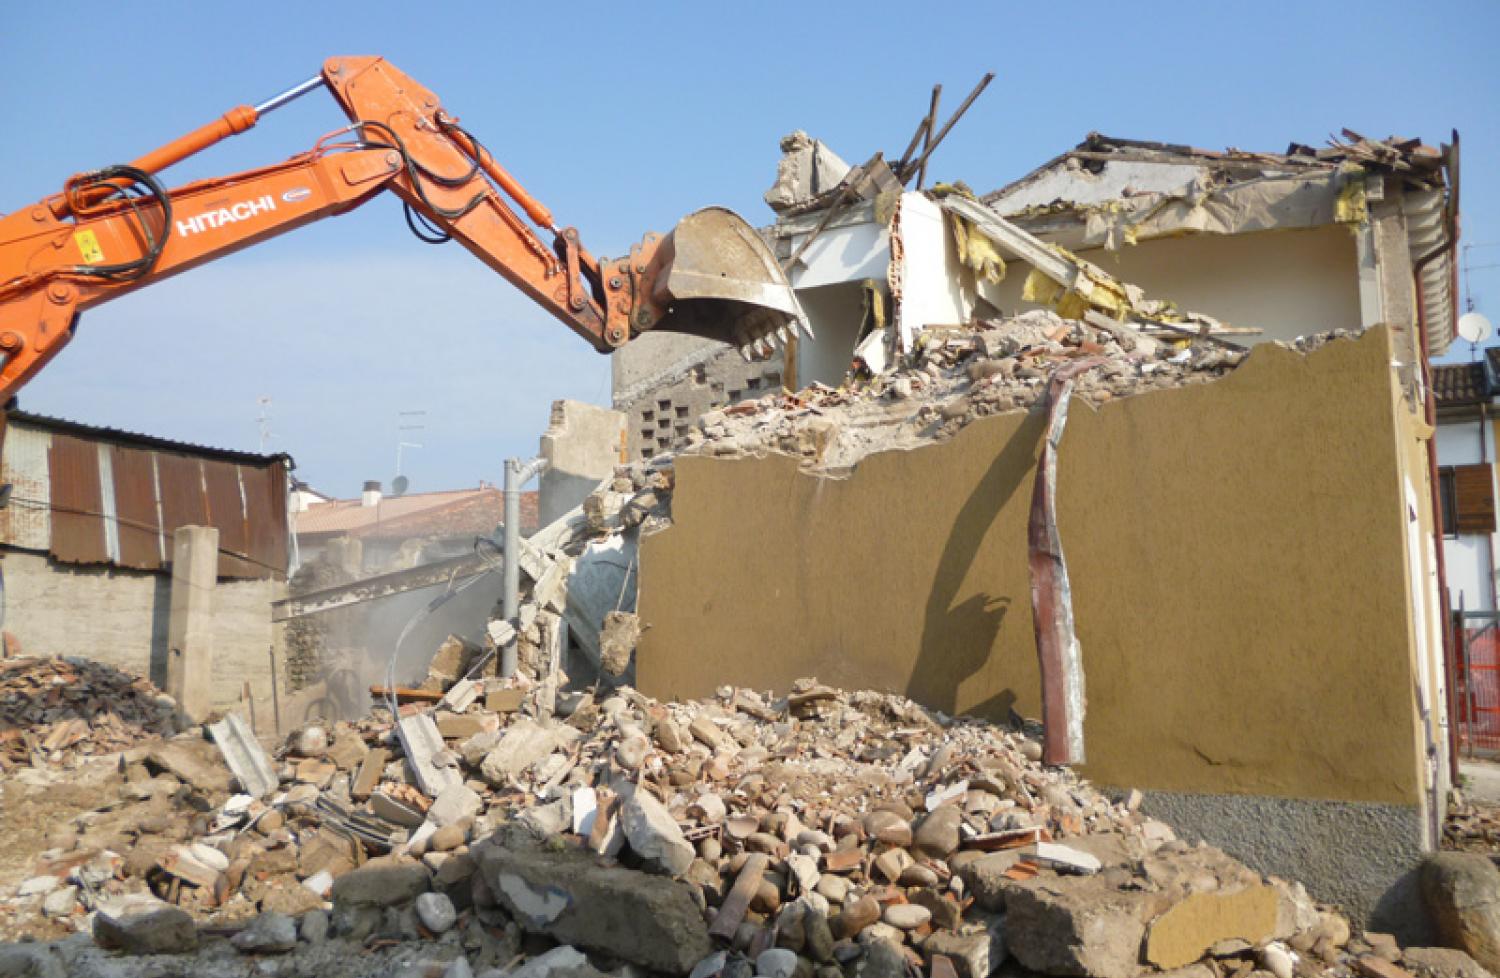 Demolizione e ricostruzione di un edificio a destinazione mista - Piano Casa